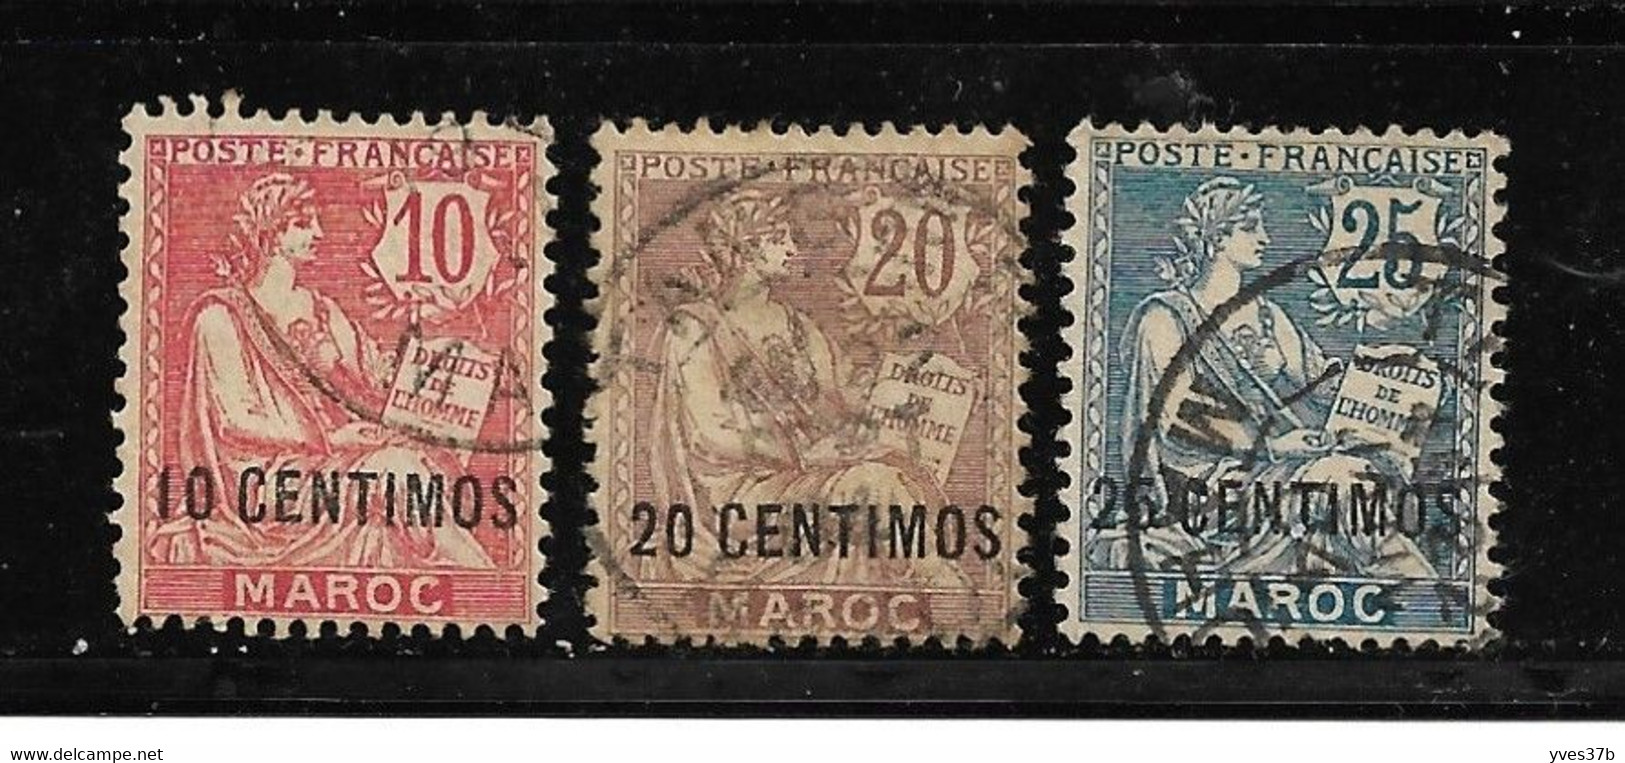 MAROC N°12 + N°13 + N°14 - 3 Val. - TTB - - Used Stamps